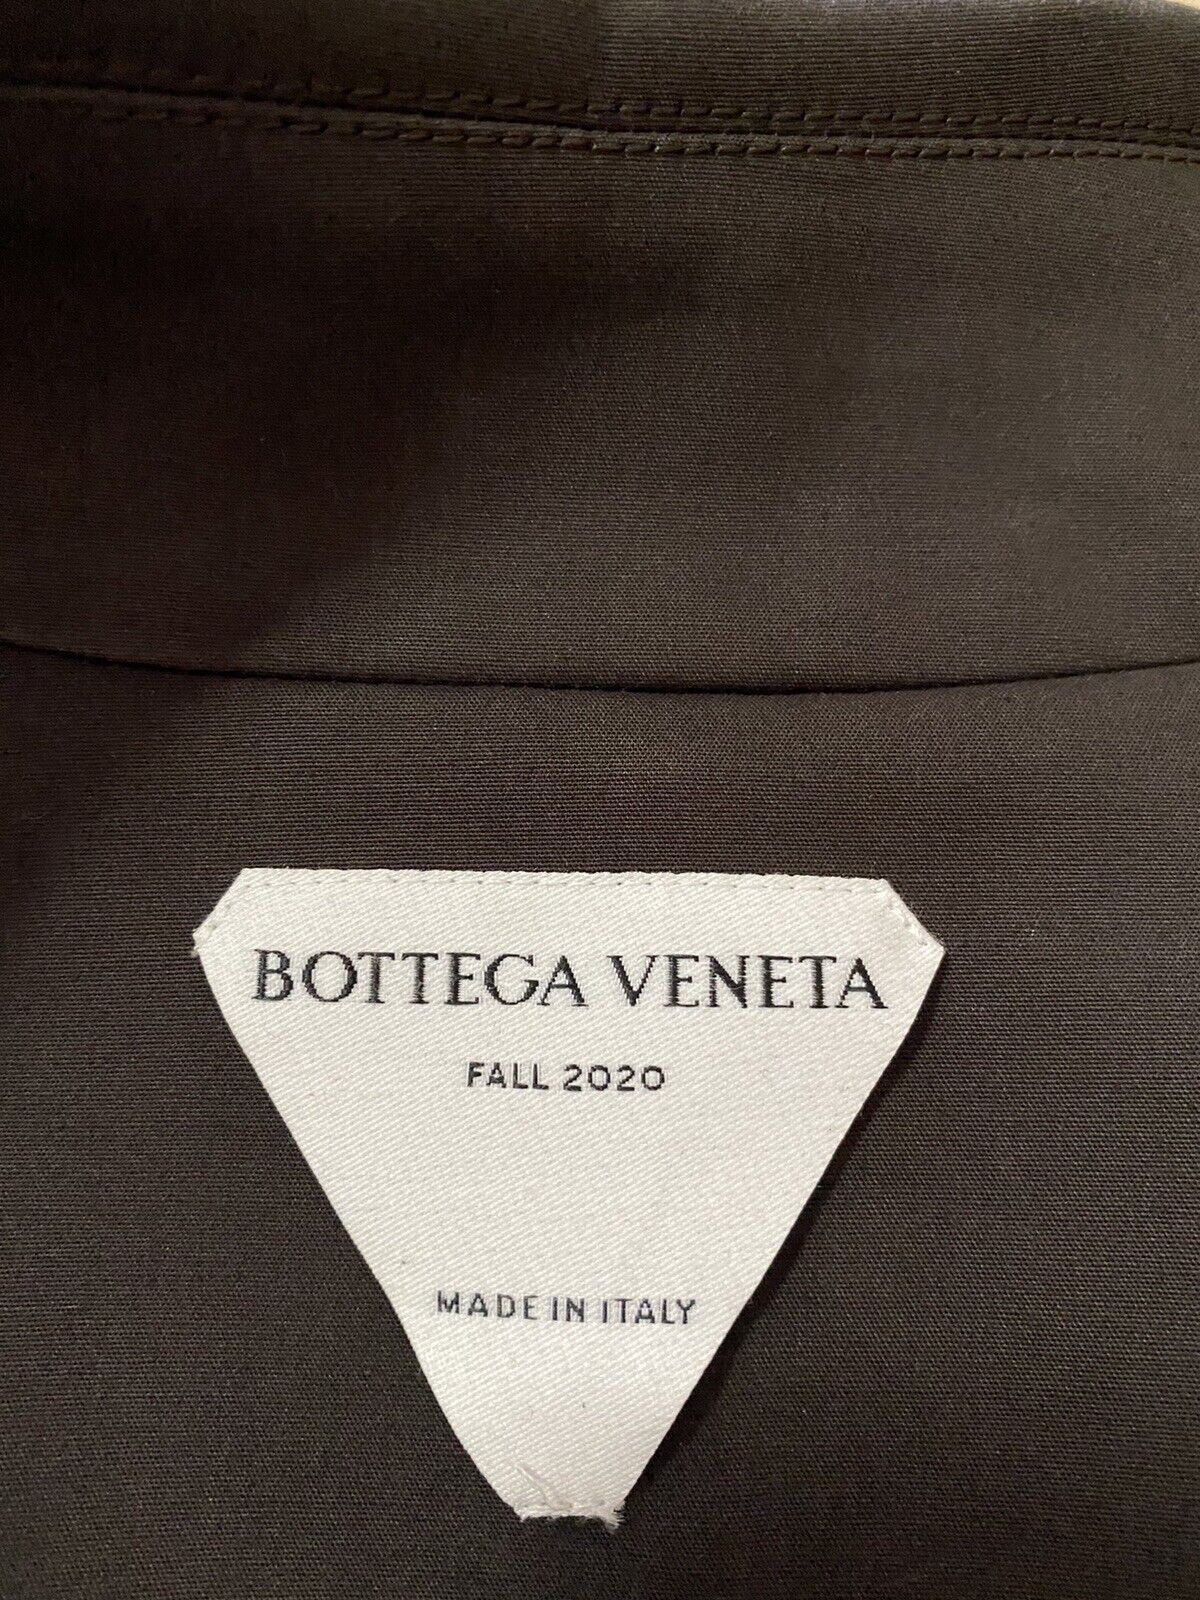 Новый мужской водонепроницаемый хлопковый плащ Bottega Veneta, 2650 долларов США, коричневый 38 США/48 ЕС